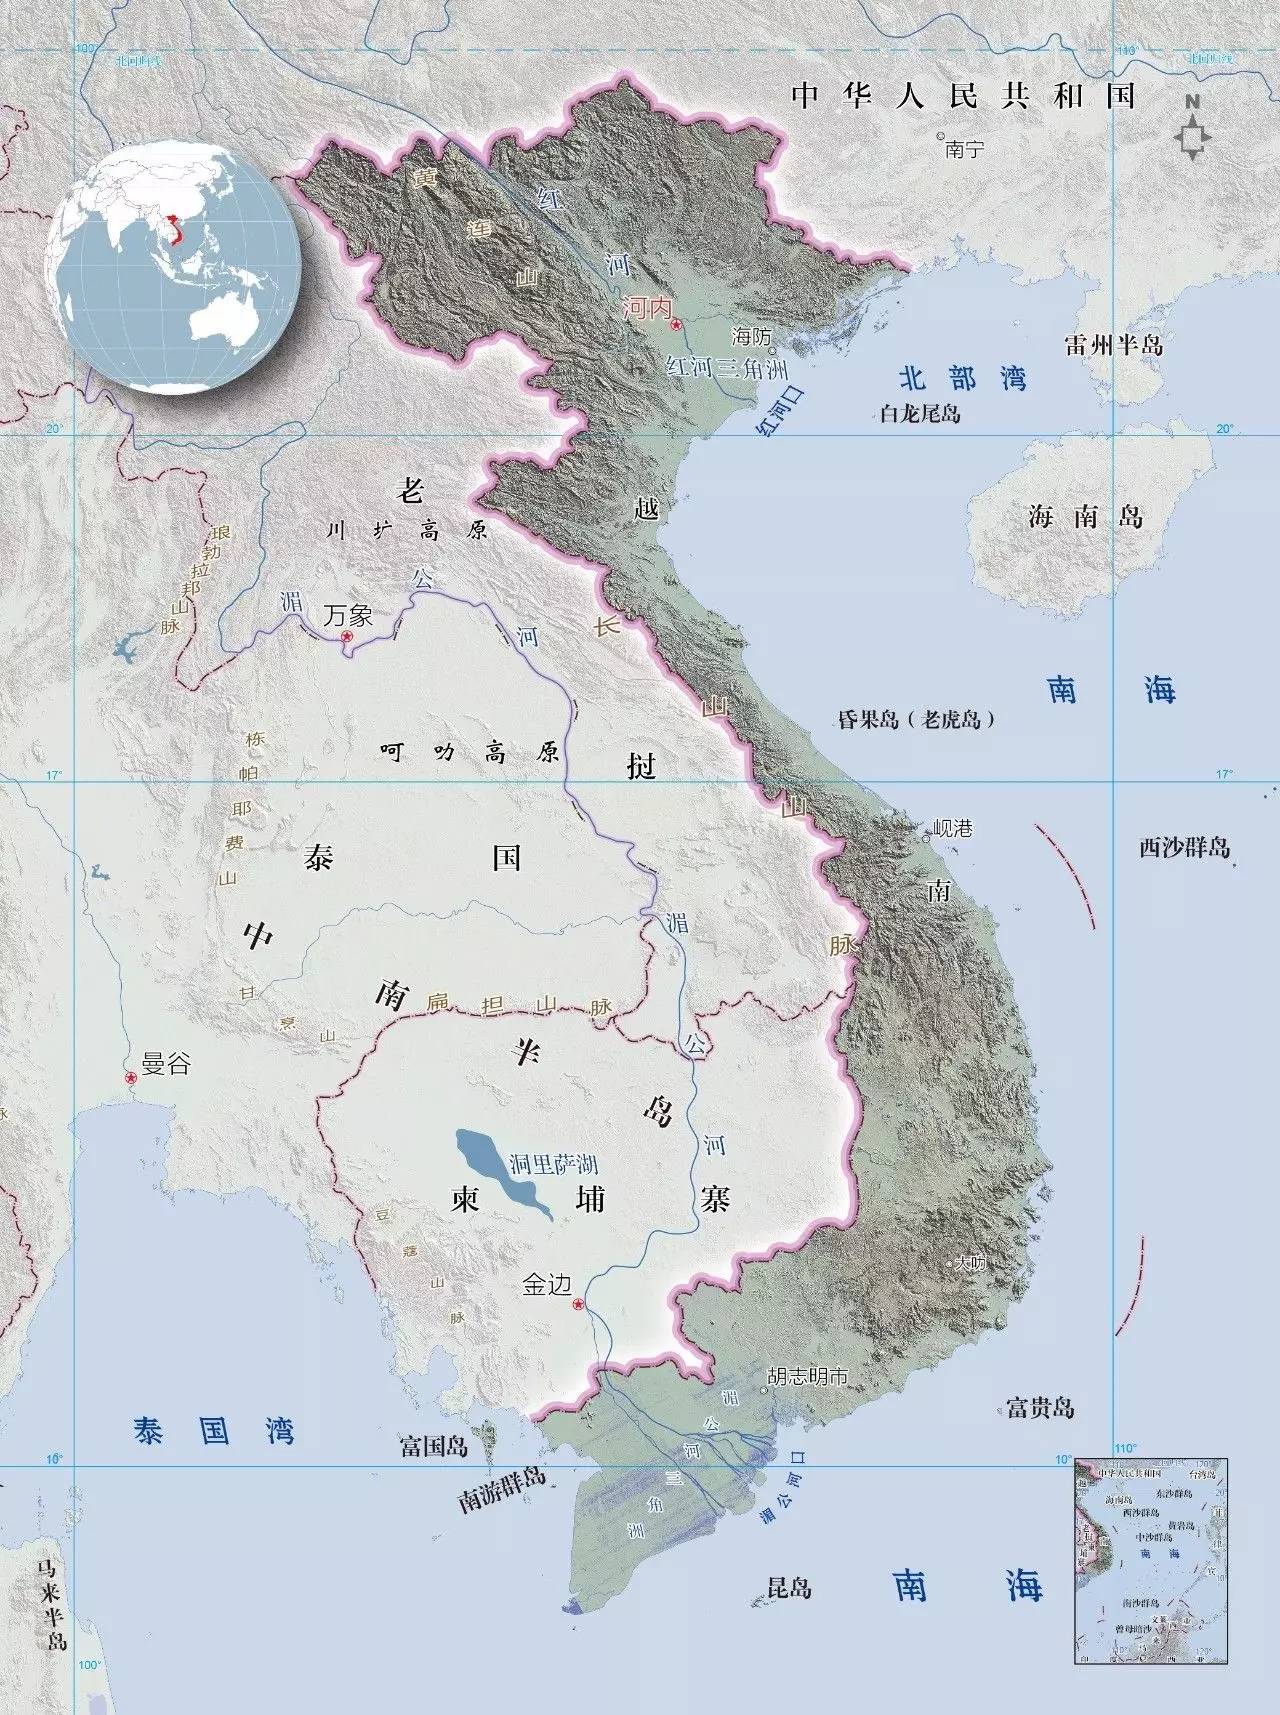 越南,兄弟还是敌人? | 地图会说话·东南亚系列04图片